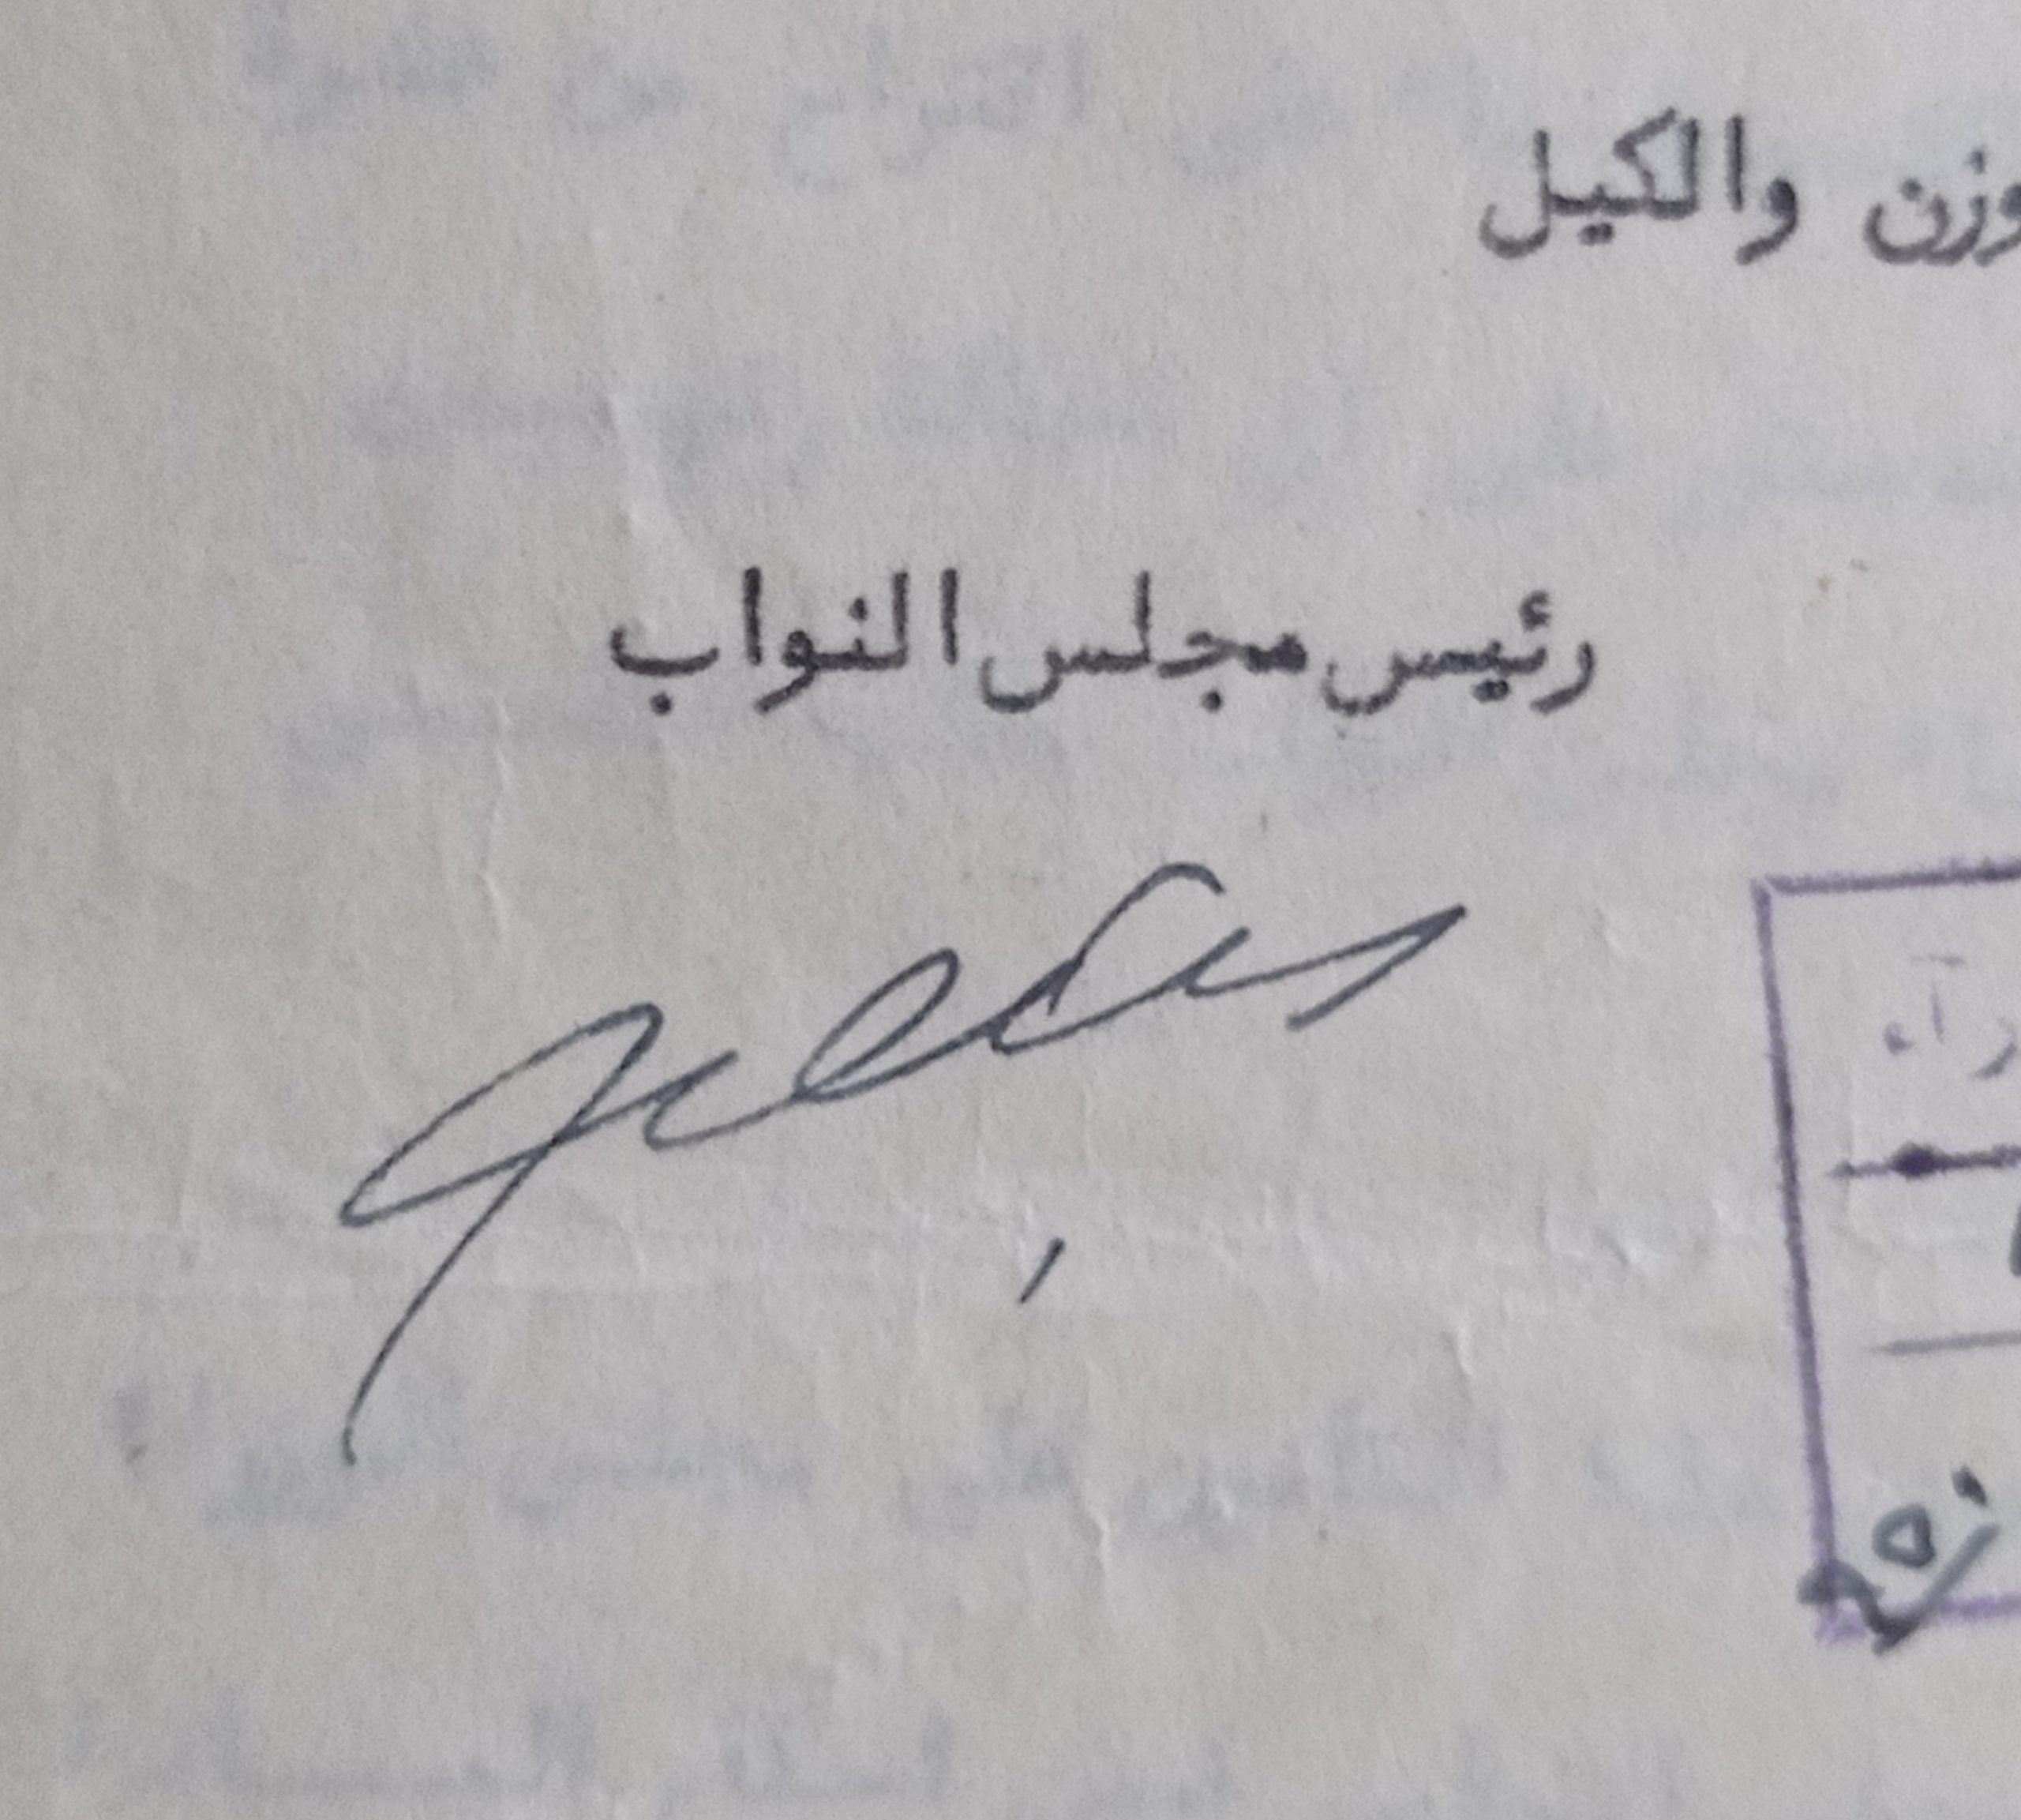 التاريخ السوري المعاصر - توقيع رشدي الكيخيا رئيس مجلس النواب السوري عام 1950